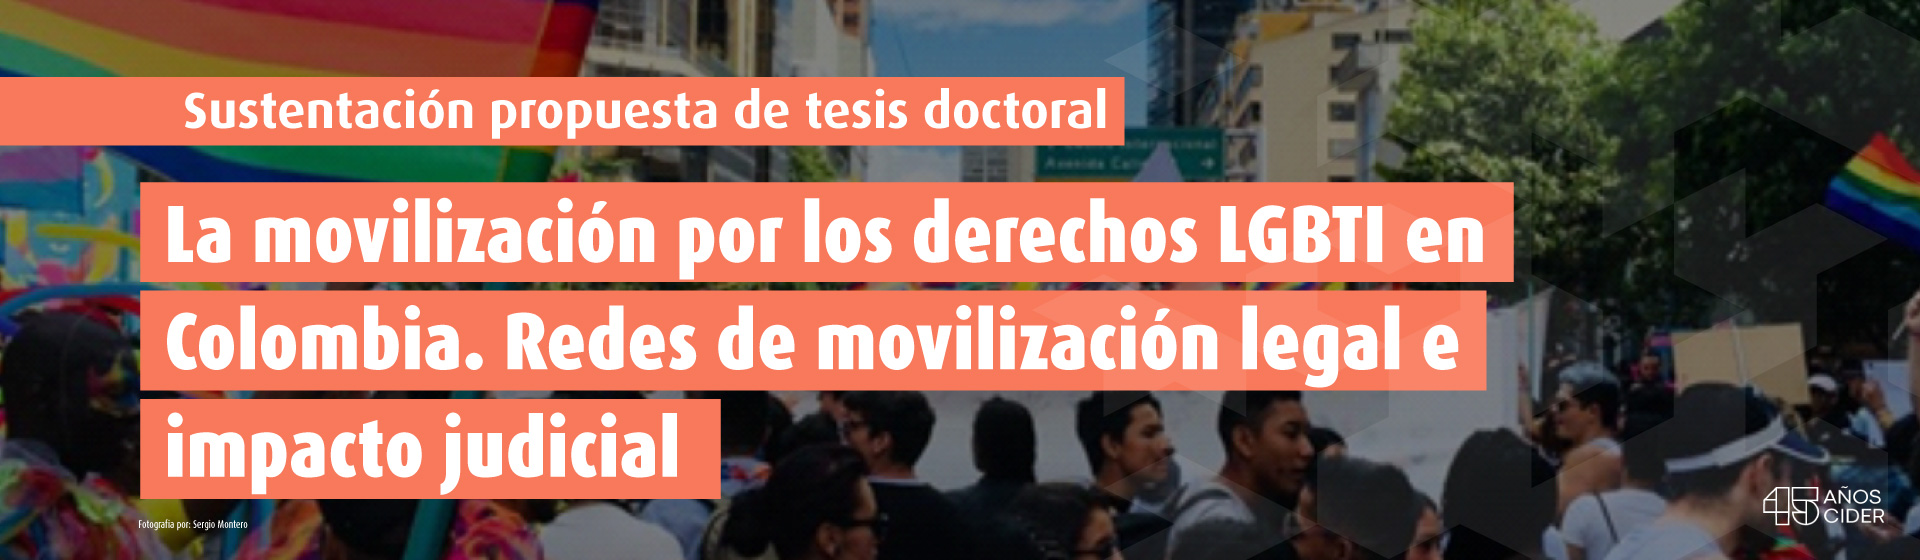 Sustentación propuesta de tesis doctoral: La movilización por los derechos LGBTI en Colombia. Redes de movilización legal e impacto judicial- Cider | Uniandes